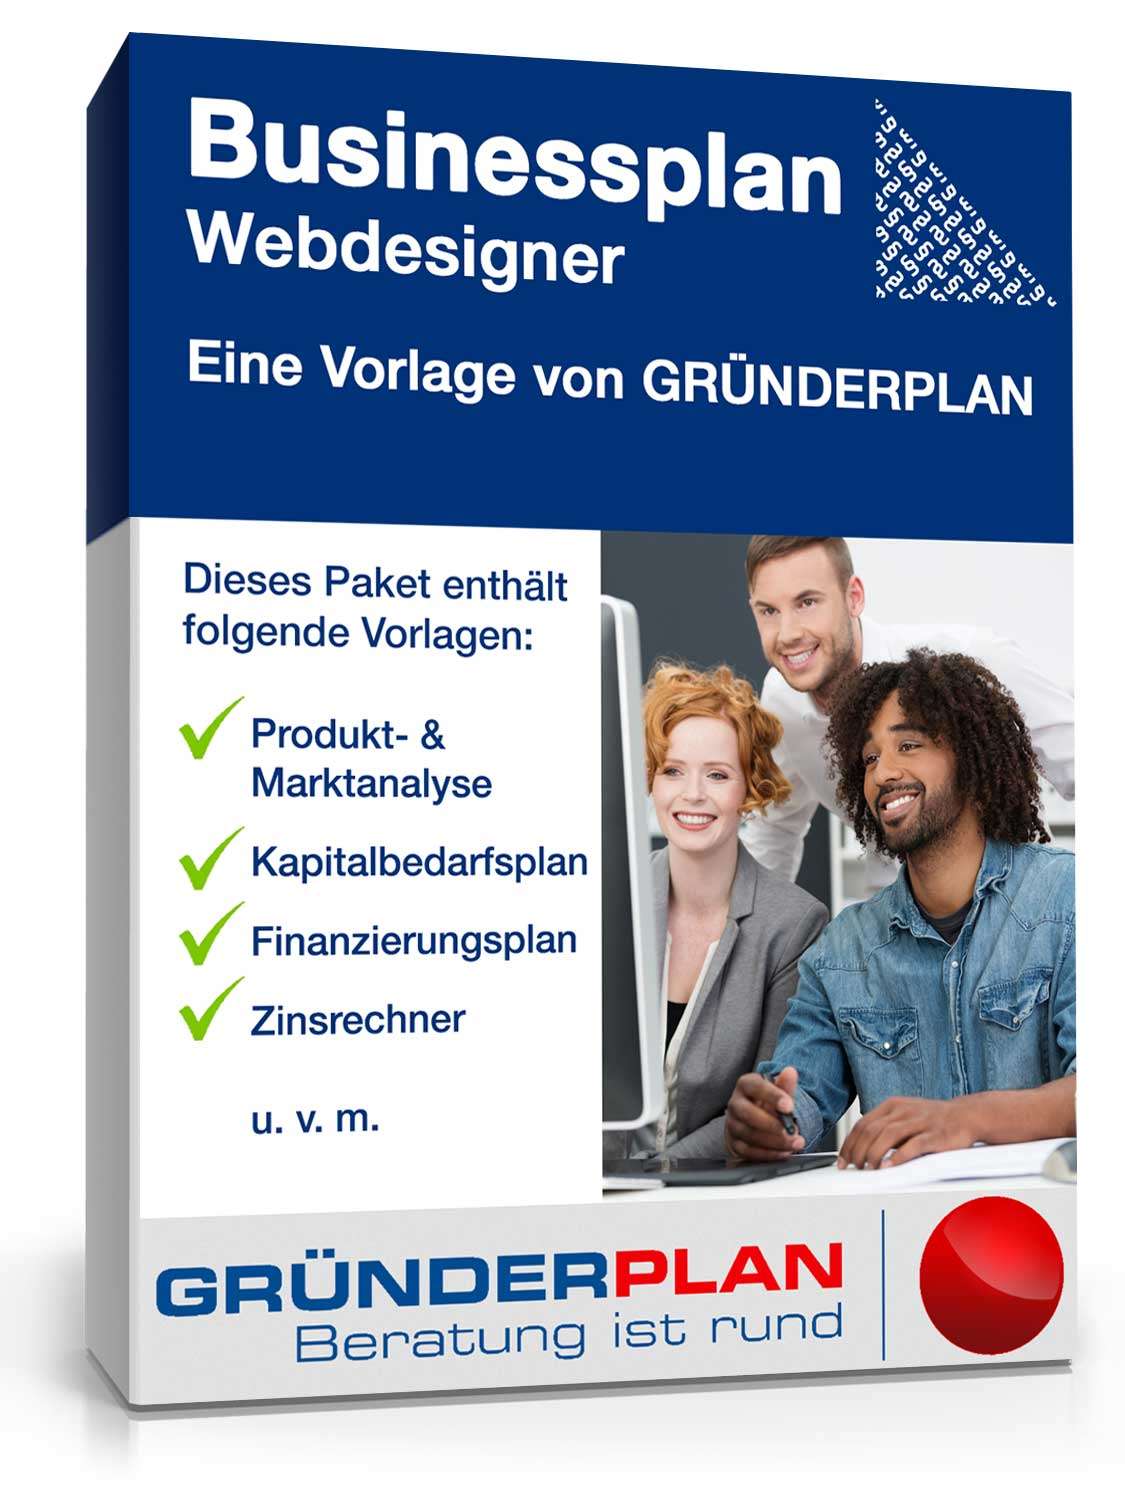 Hauptbild des Produkts: Businessplan Webdesigner von Gründerplan